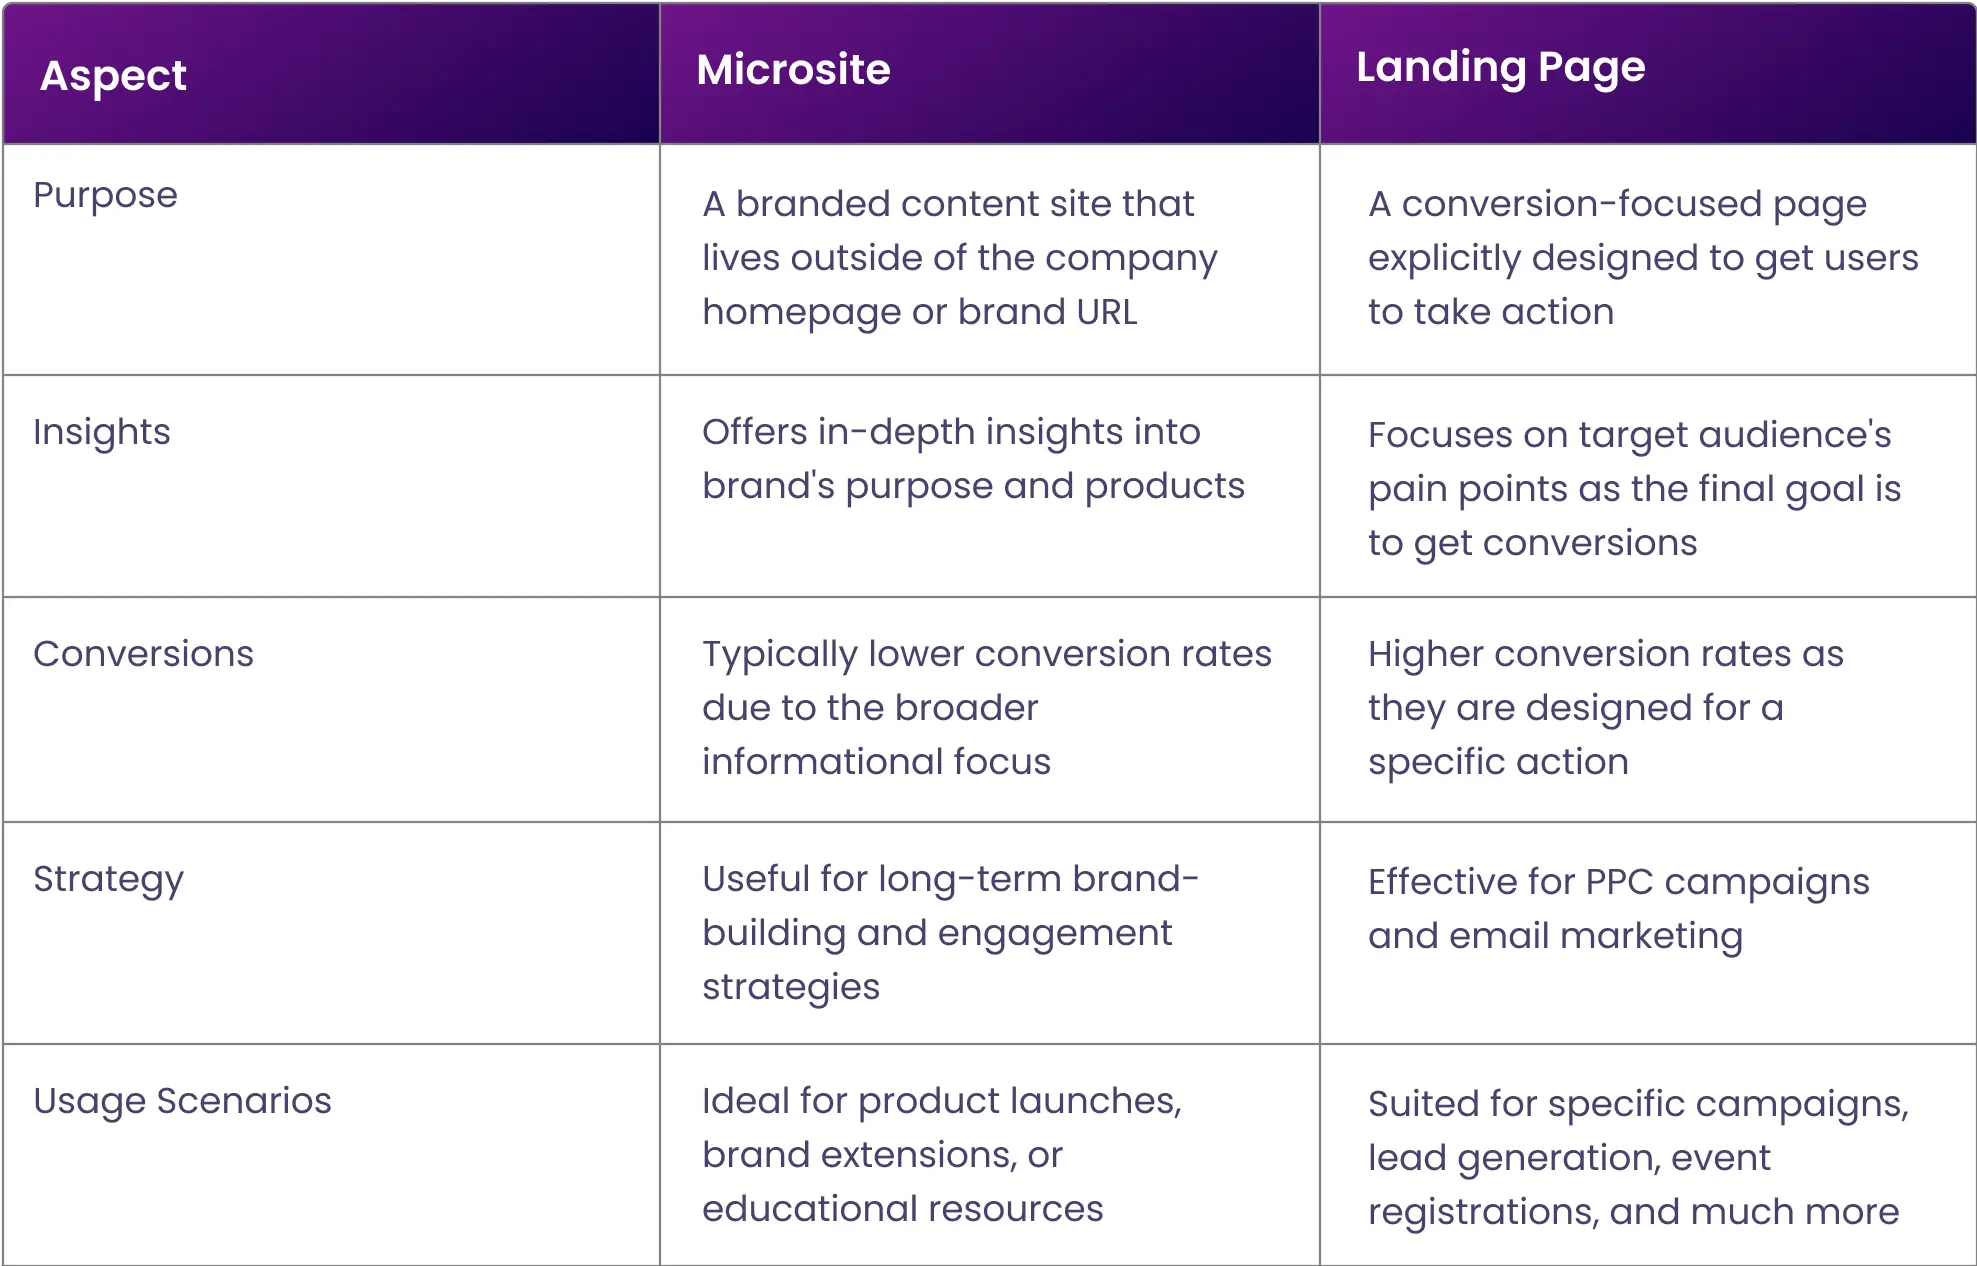 microsite-vs-landing-page-comparison-table-6ee5d1.webp